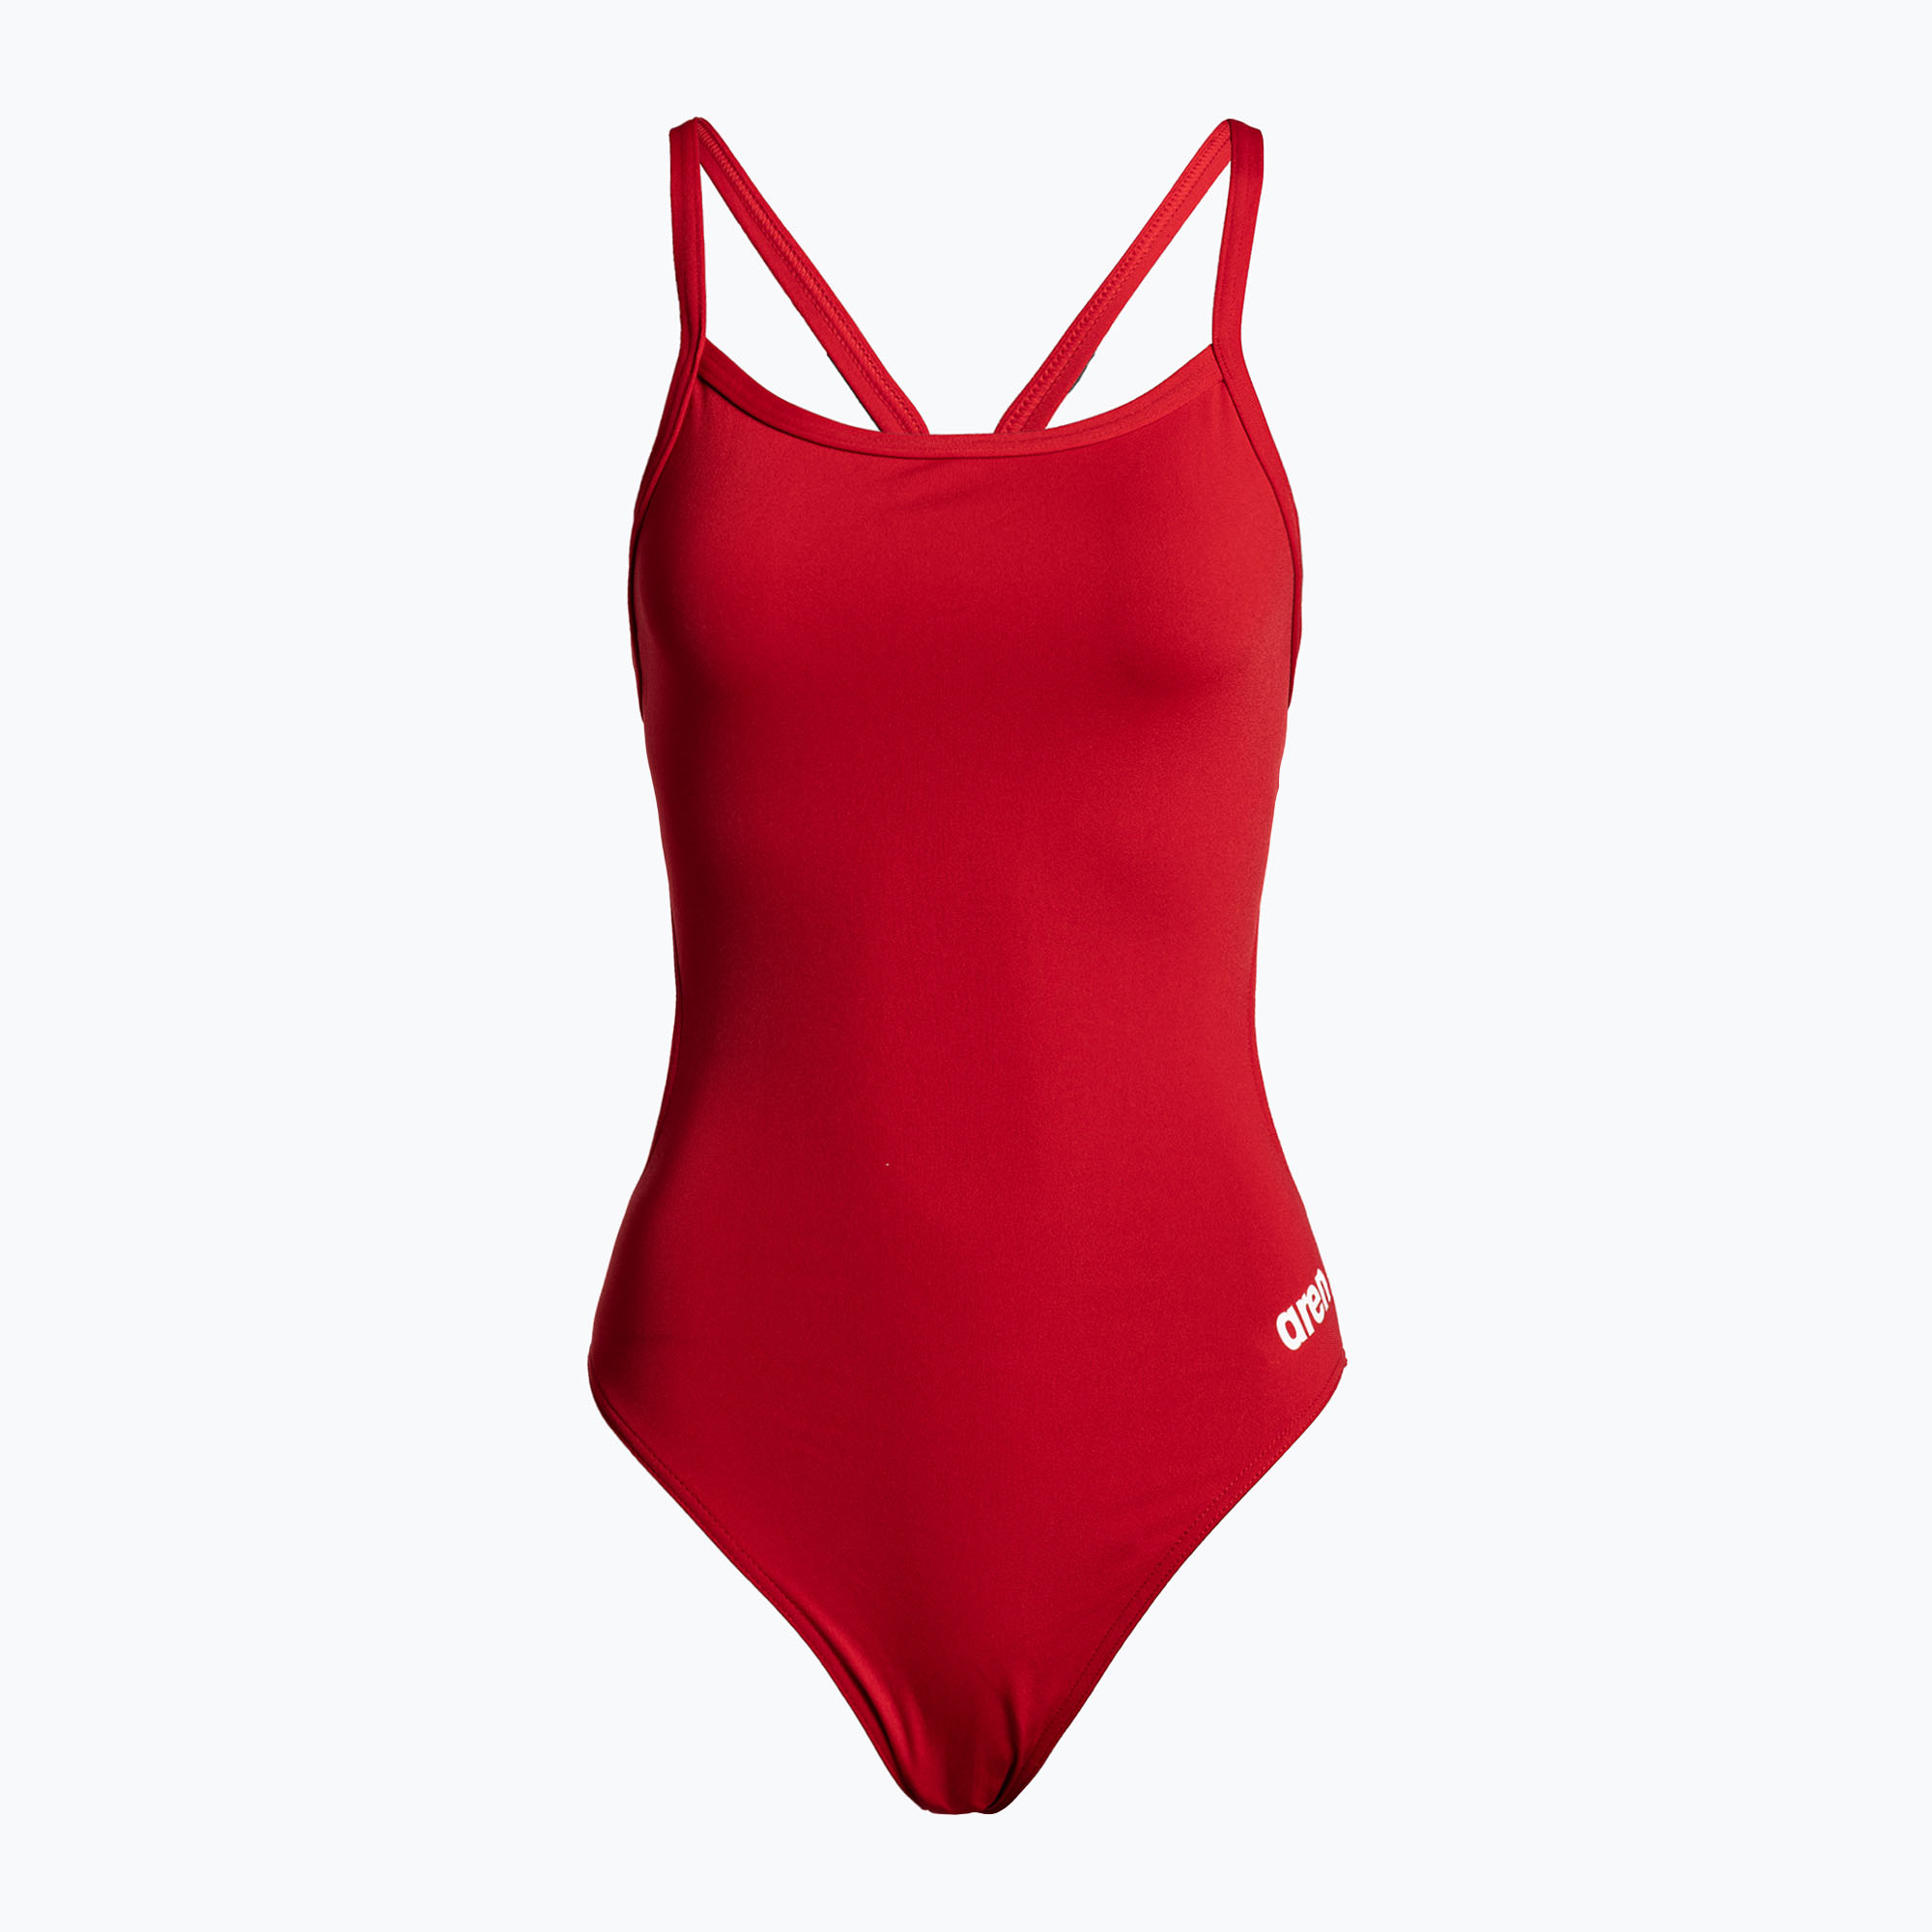 Дамски бански костюм от една част arena Team Challenge Solid red 004766